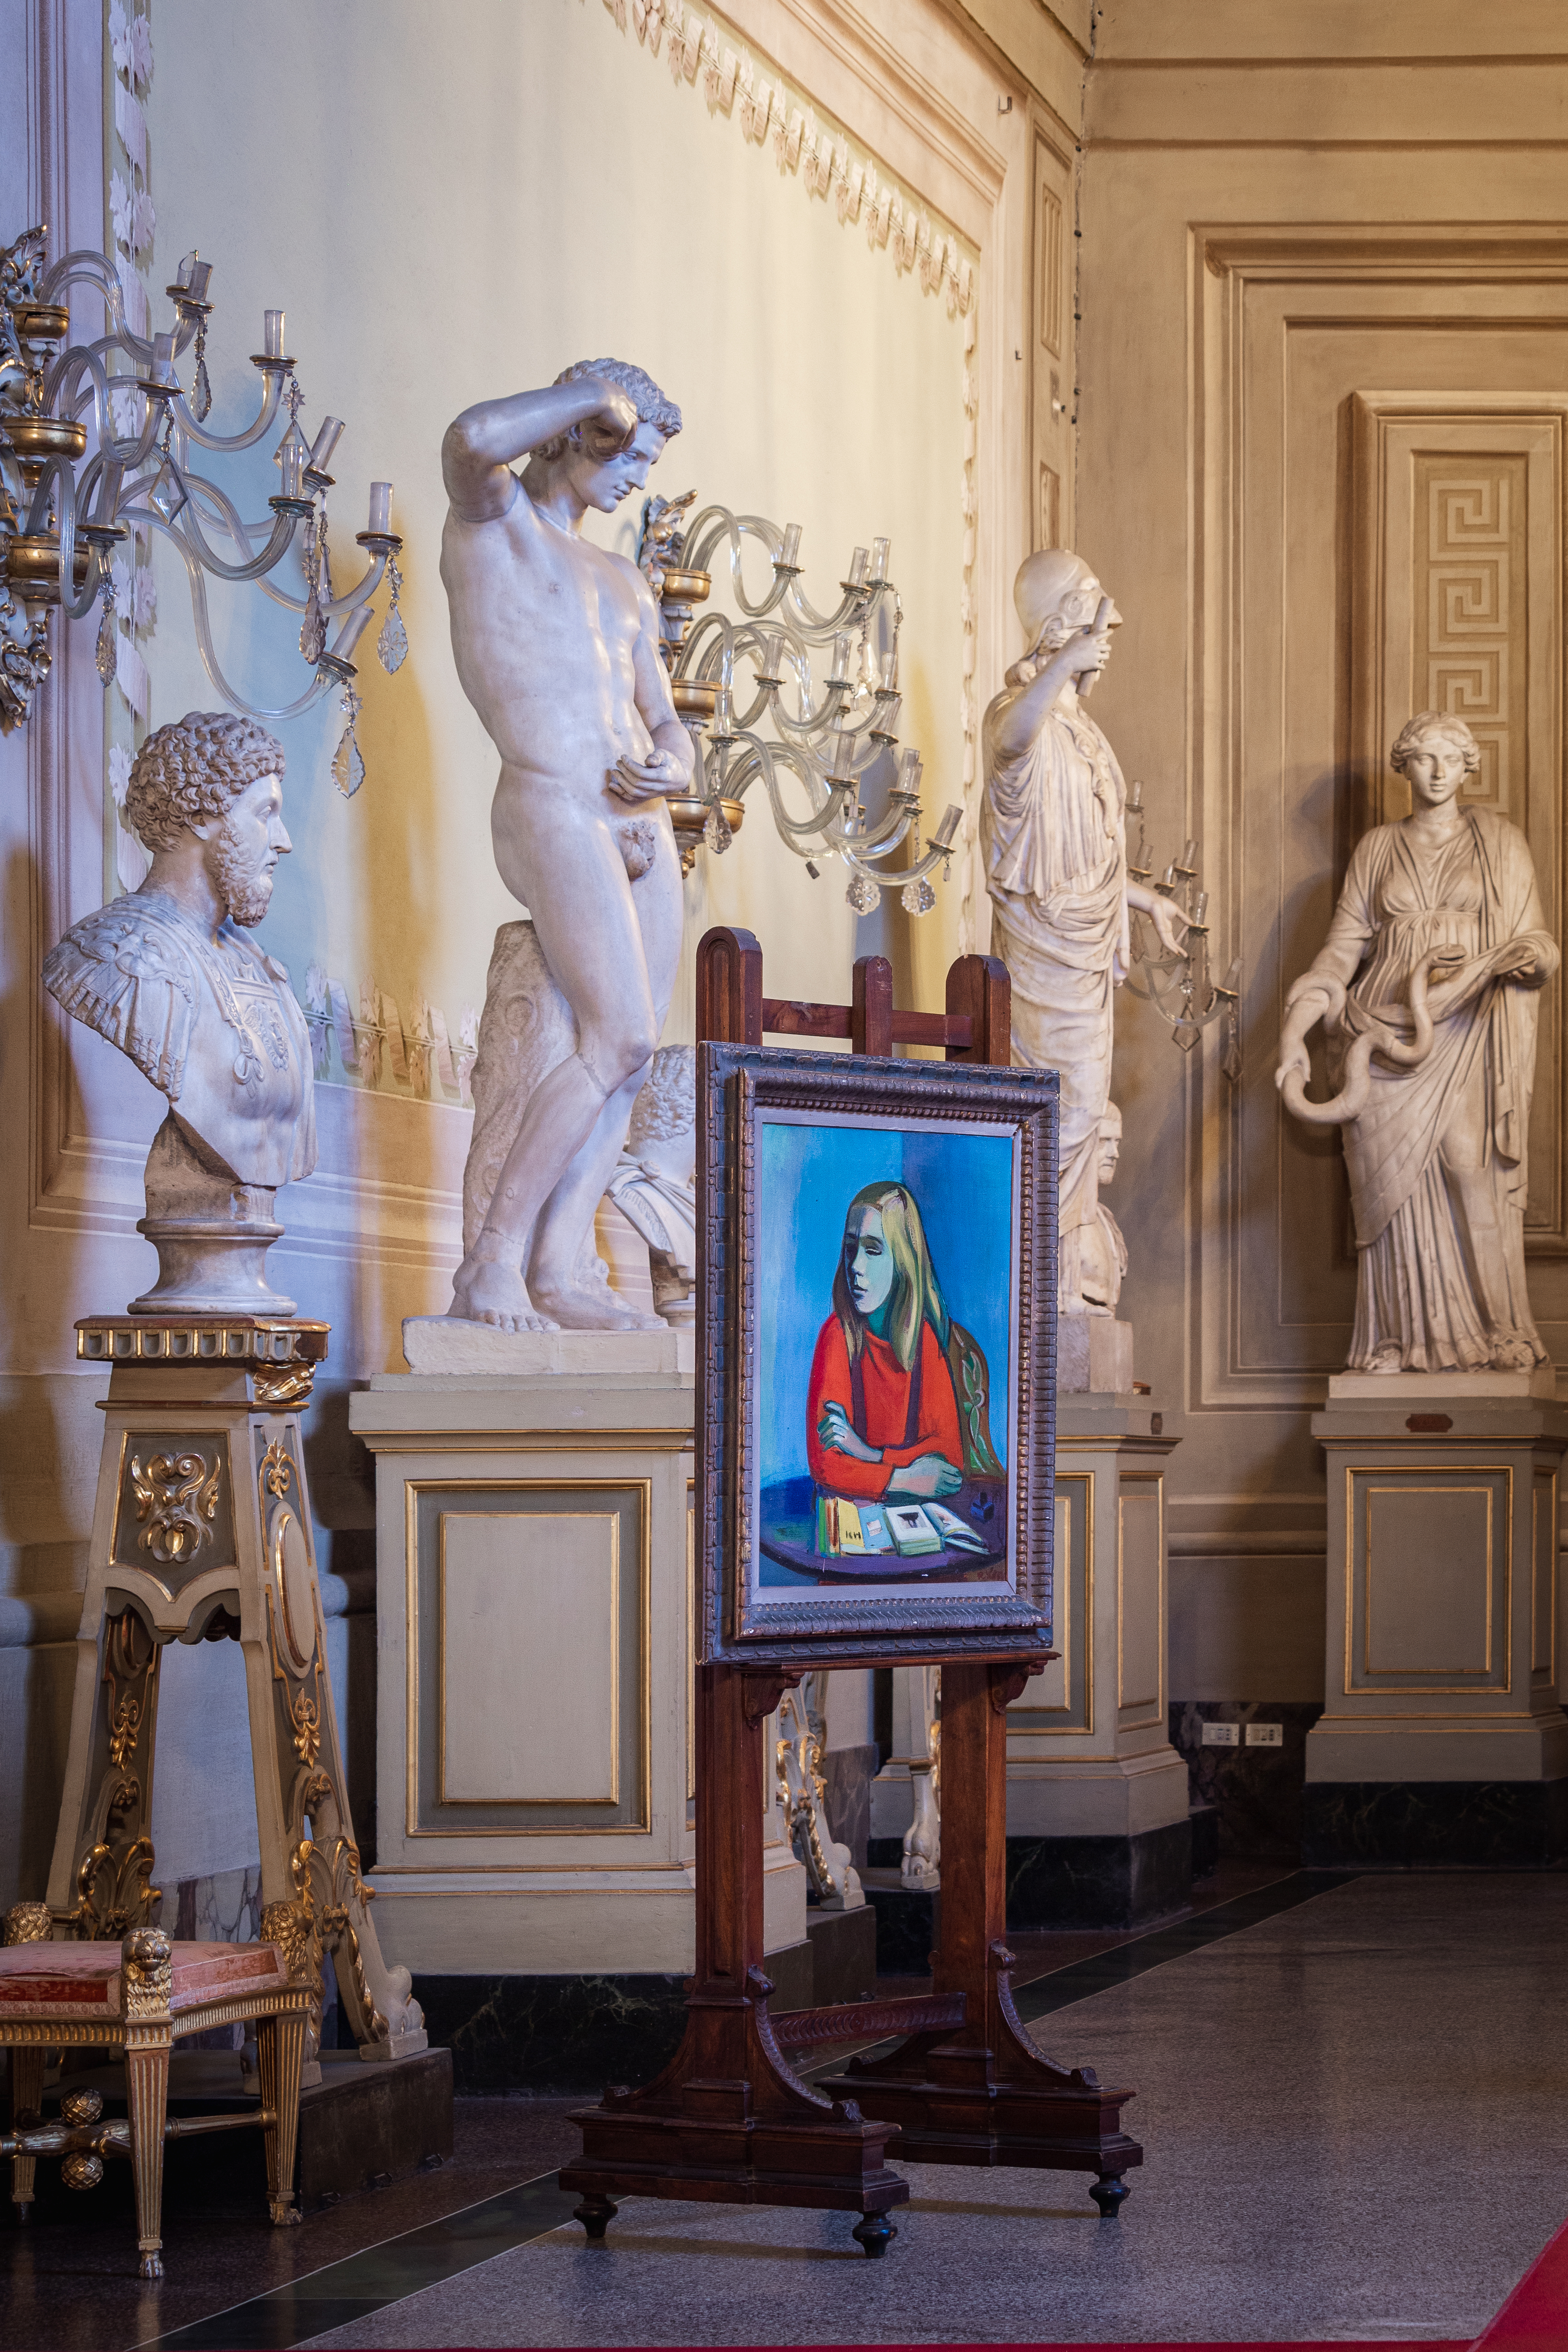 Giorno della memoria: le Gallerie degli Uffizi acquistano un importante dipinto di Rudolf Levy, pittore tedesco deportato ad Auschwitz